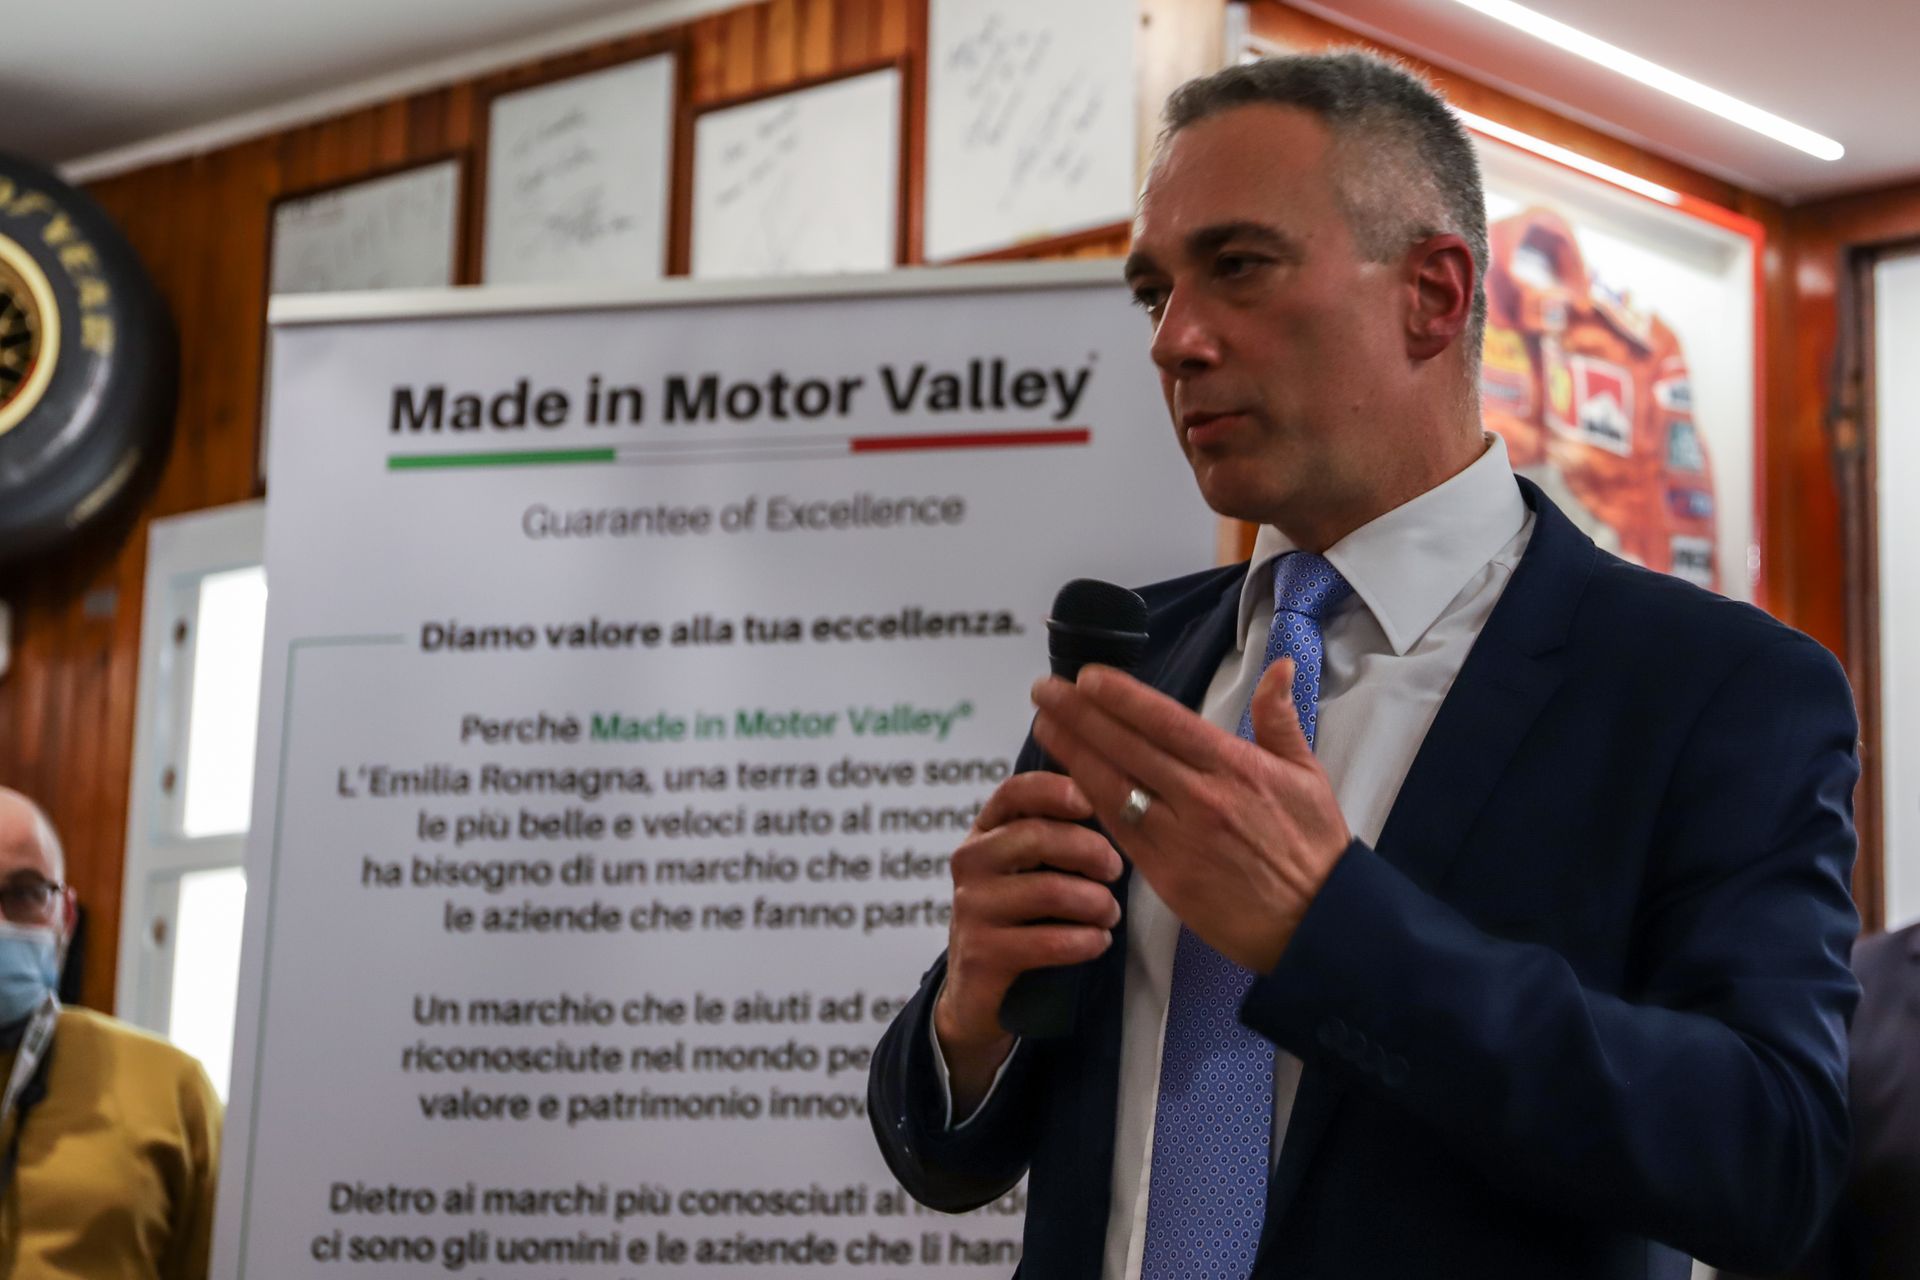 Antreprenor din Finale Socrate Zizza la prezentarea inițiativei „Made in Motor Valley” la Fiorano Modenese